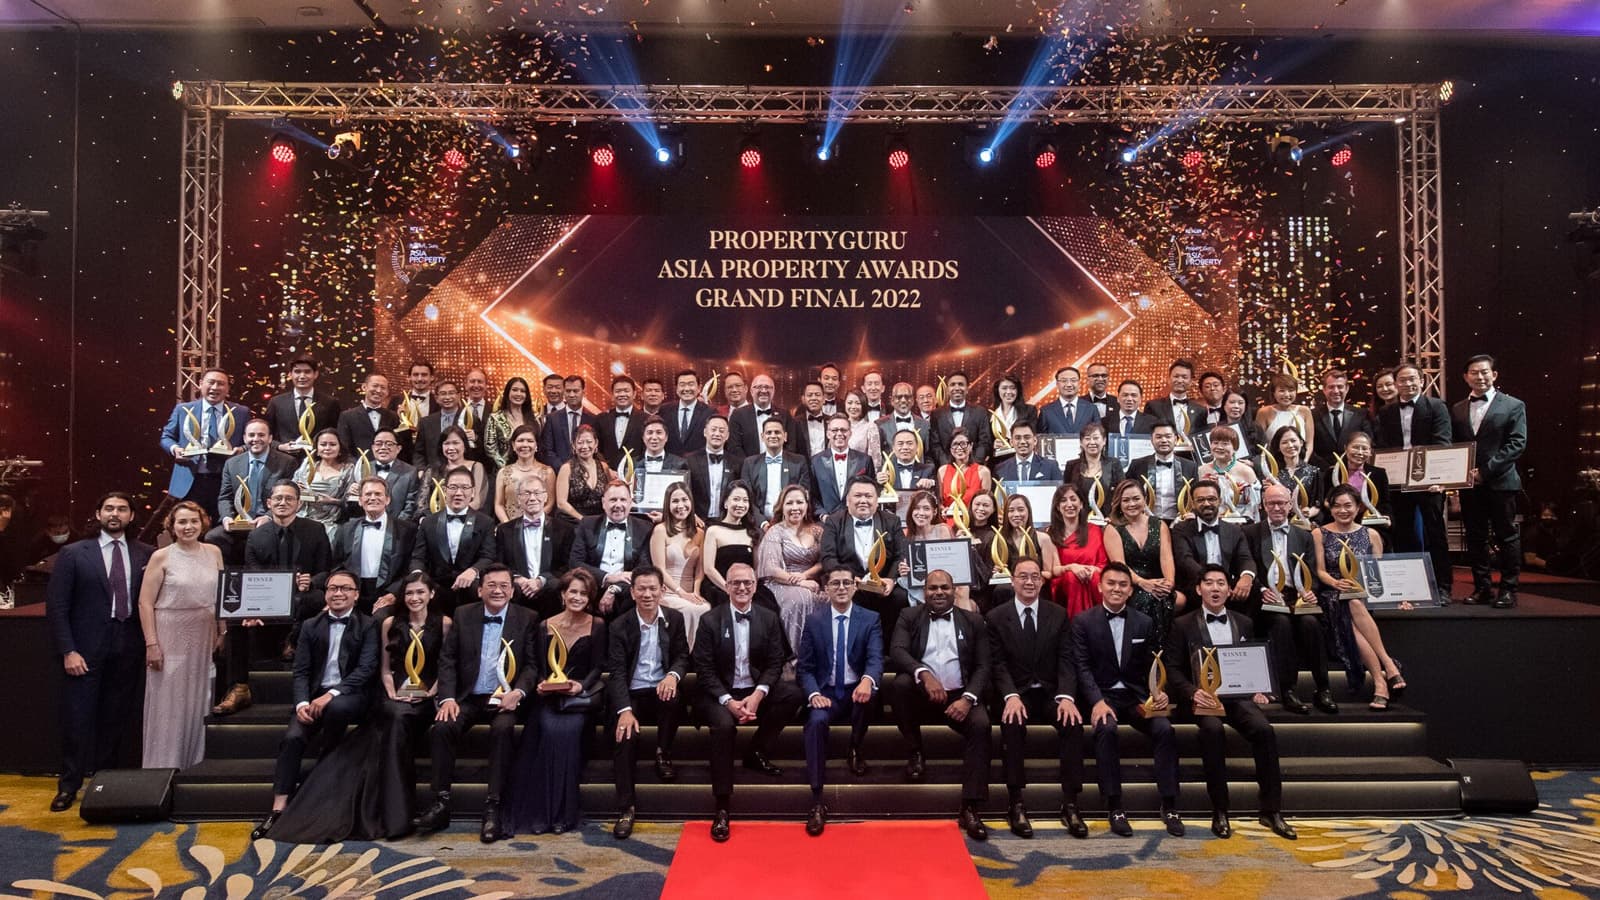 Khởi động Giải thưởng BĐS Việt Nam PropertyGuru lần thứ 9